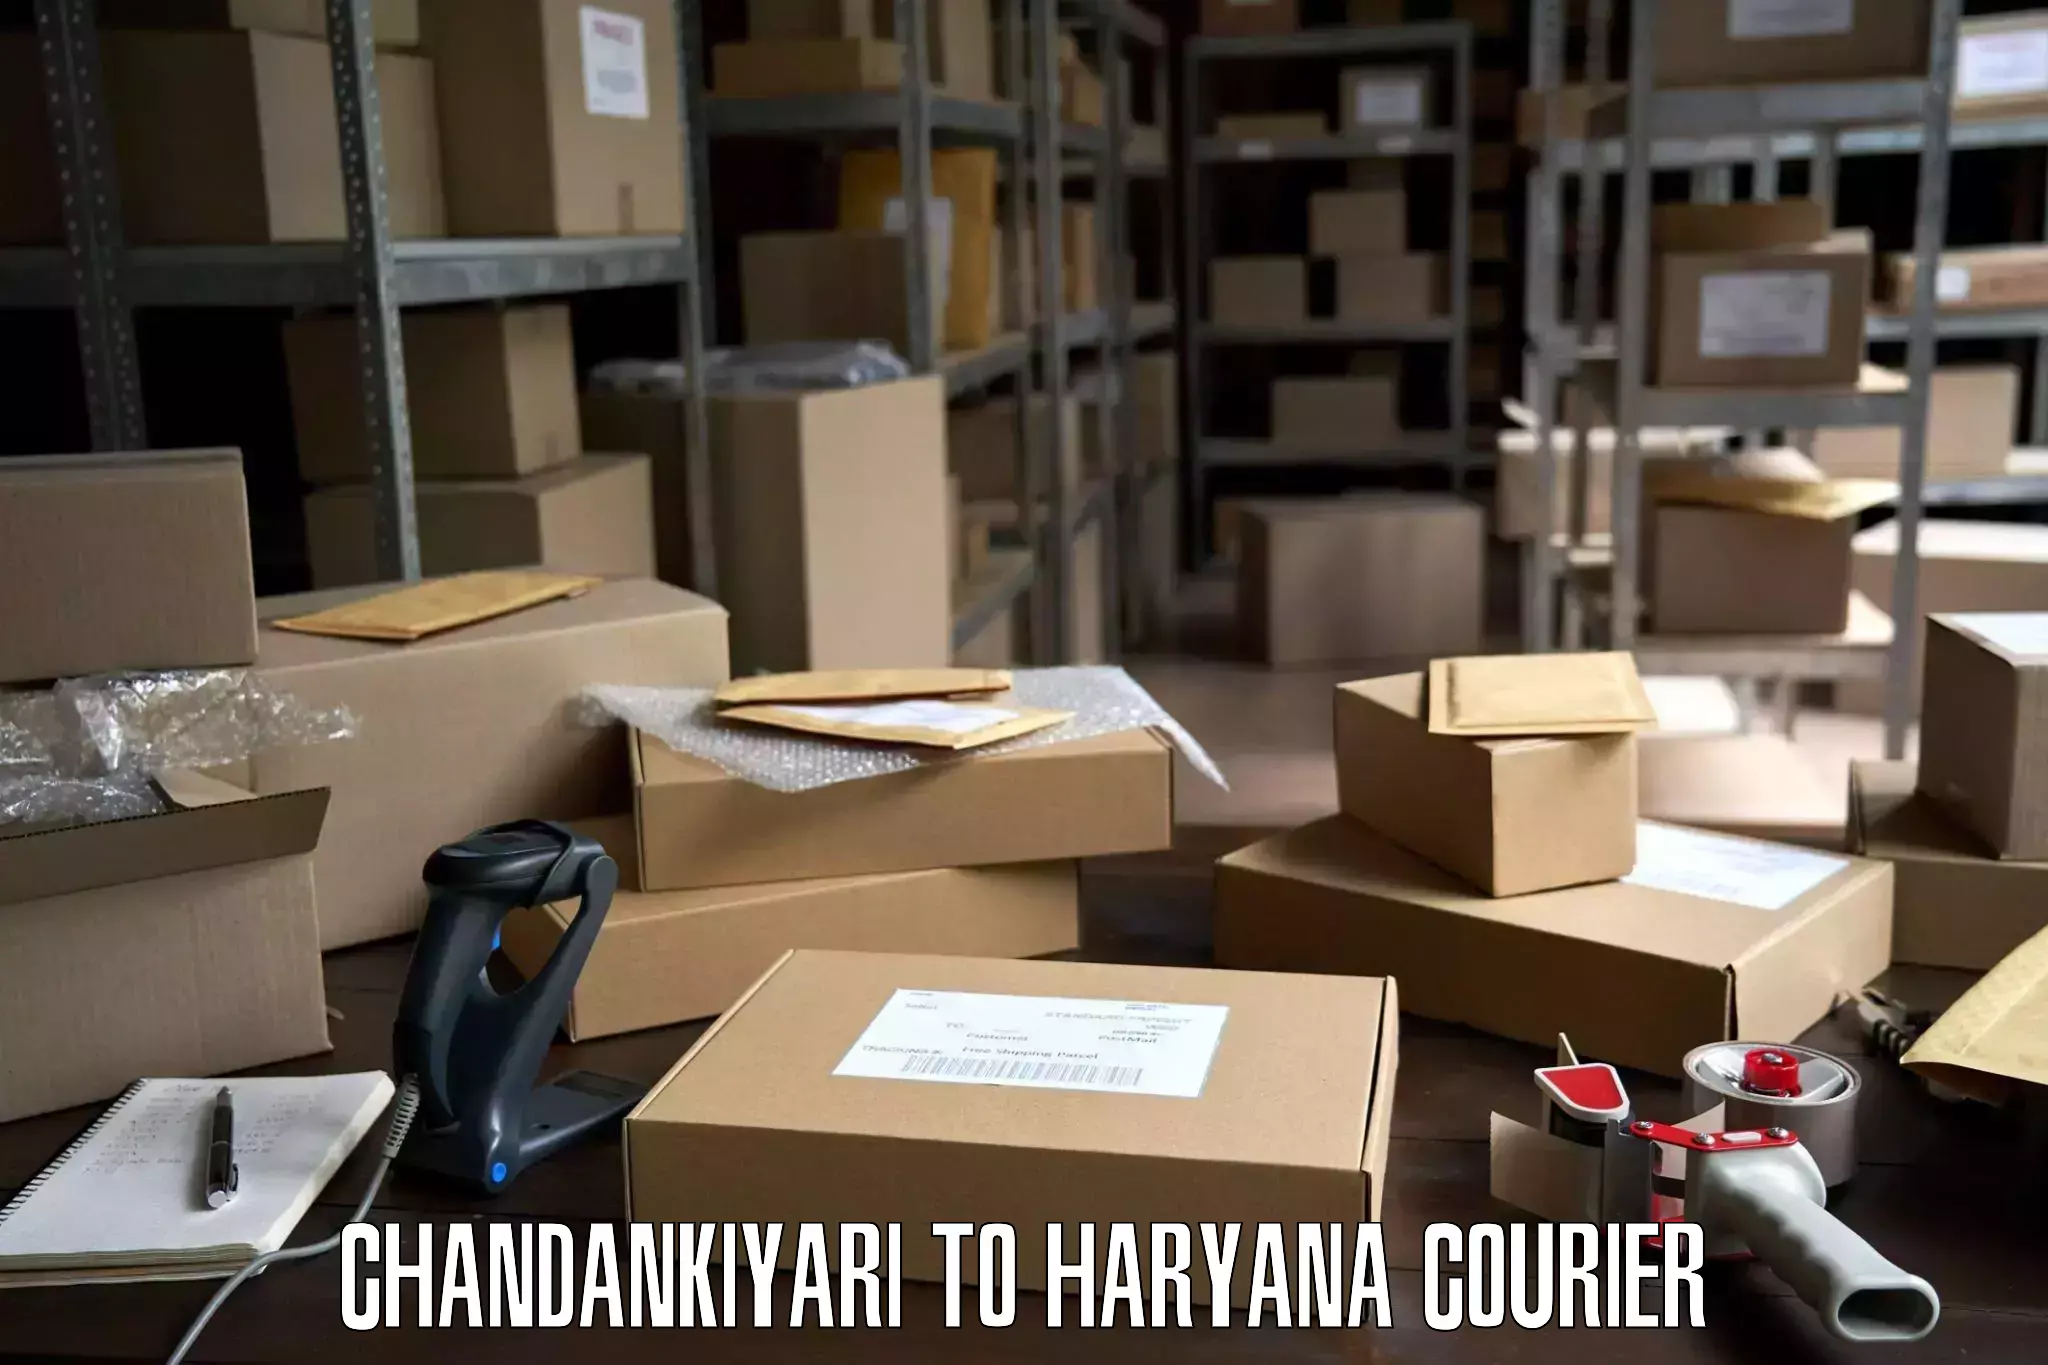 Expert relocation solutions Chandankiyari to Haryana